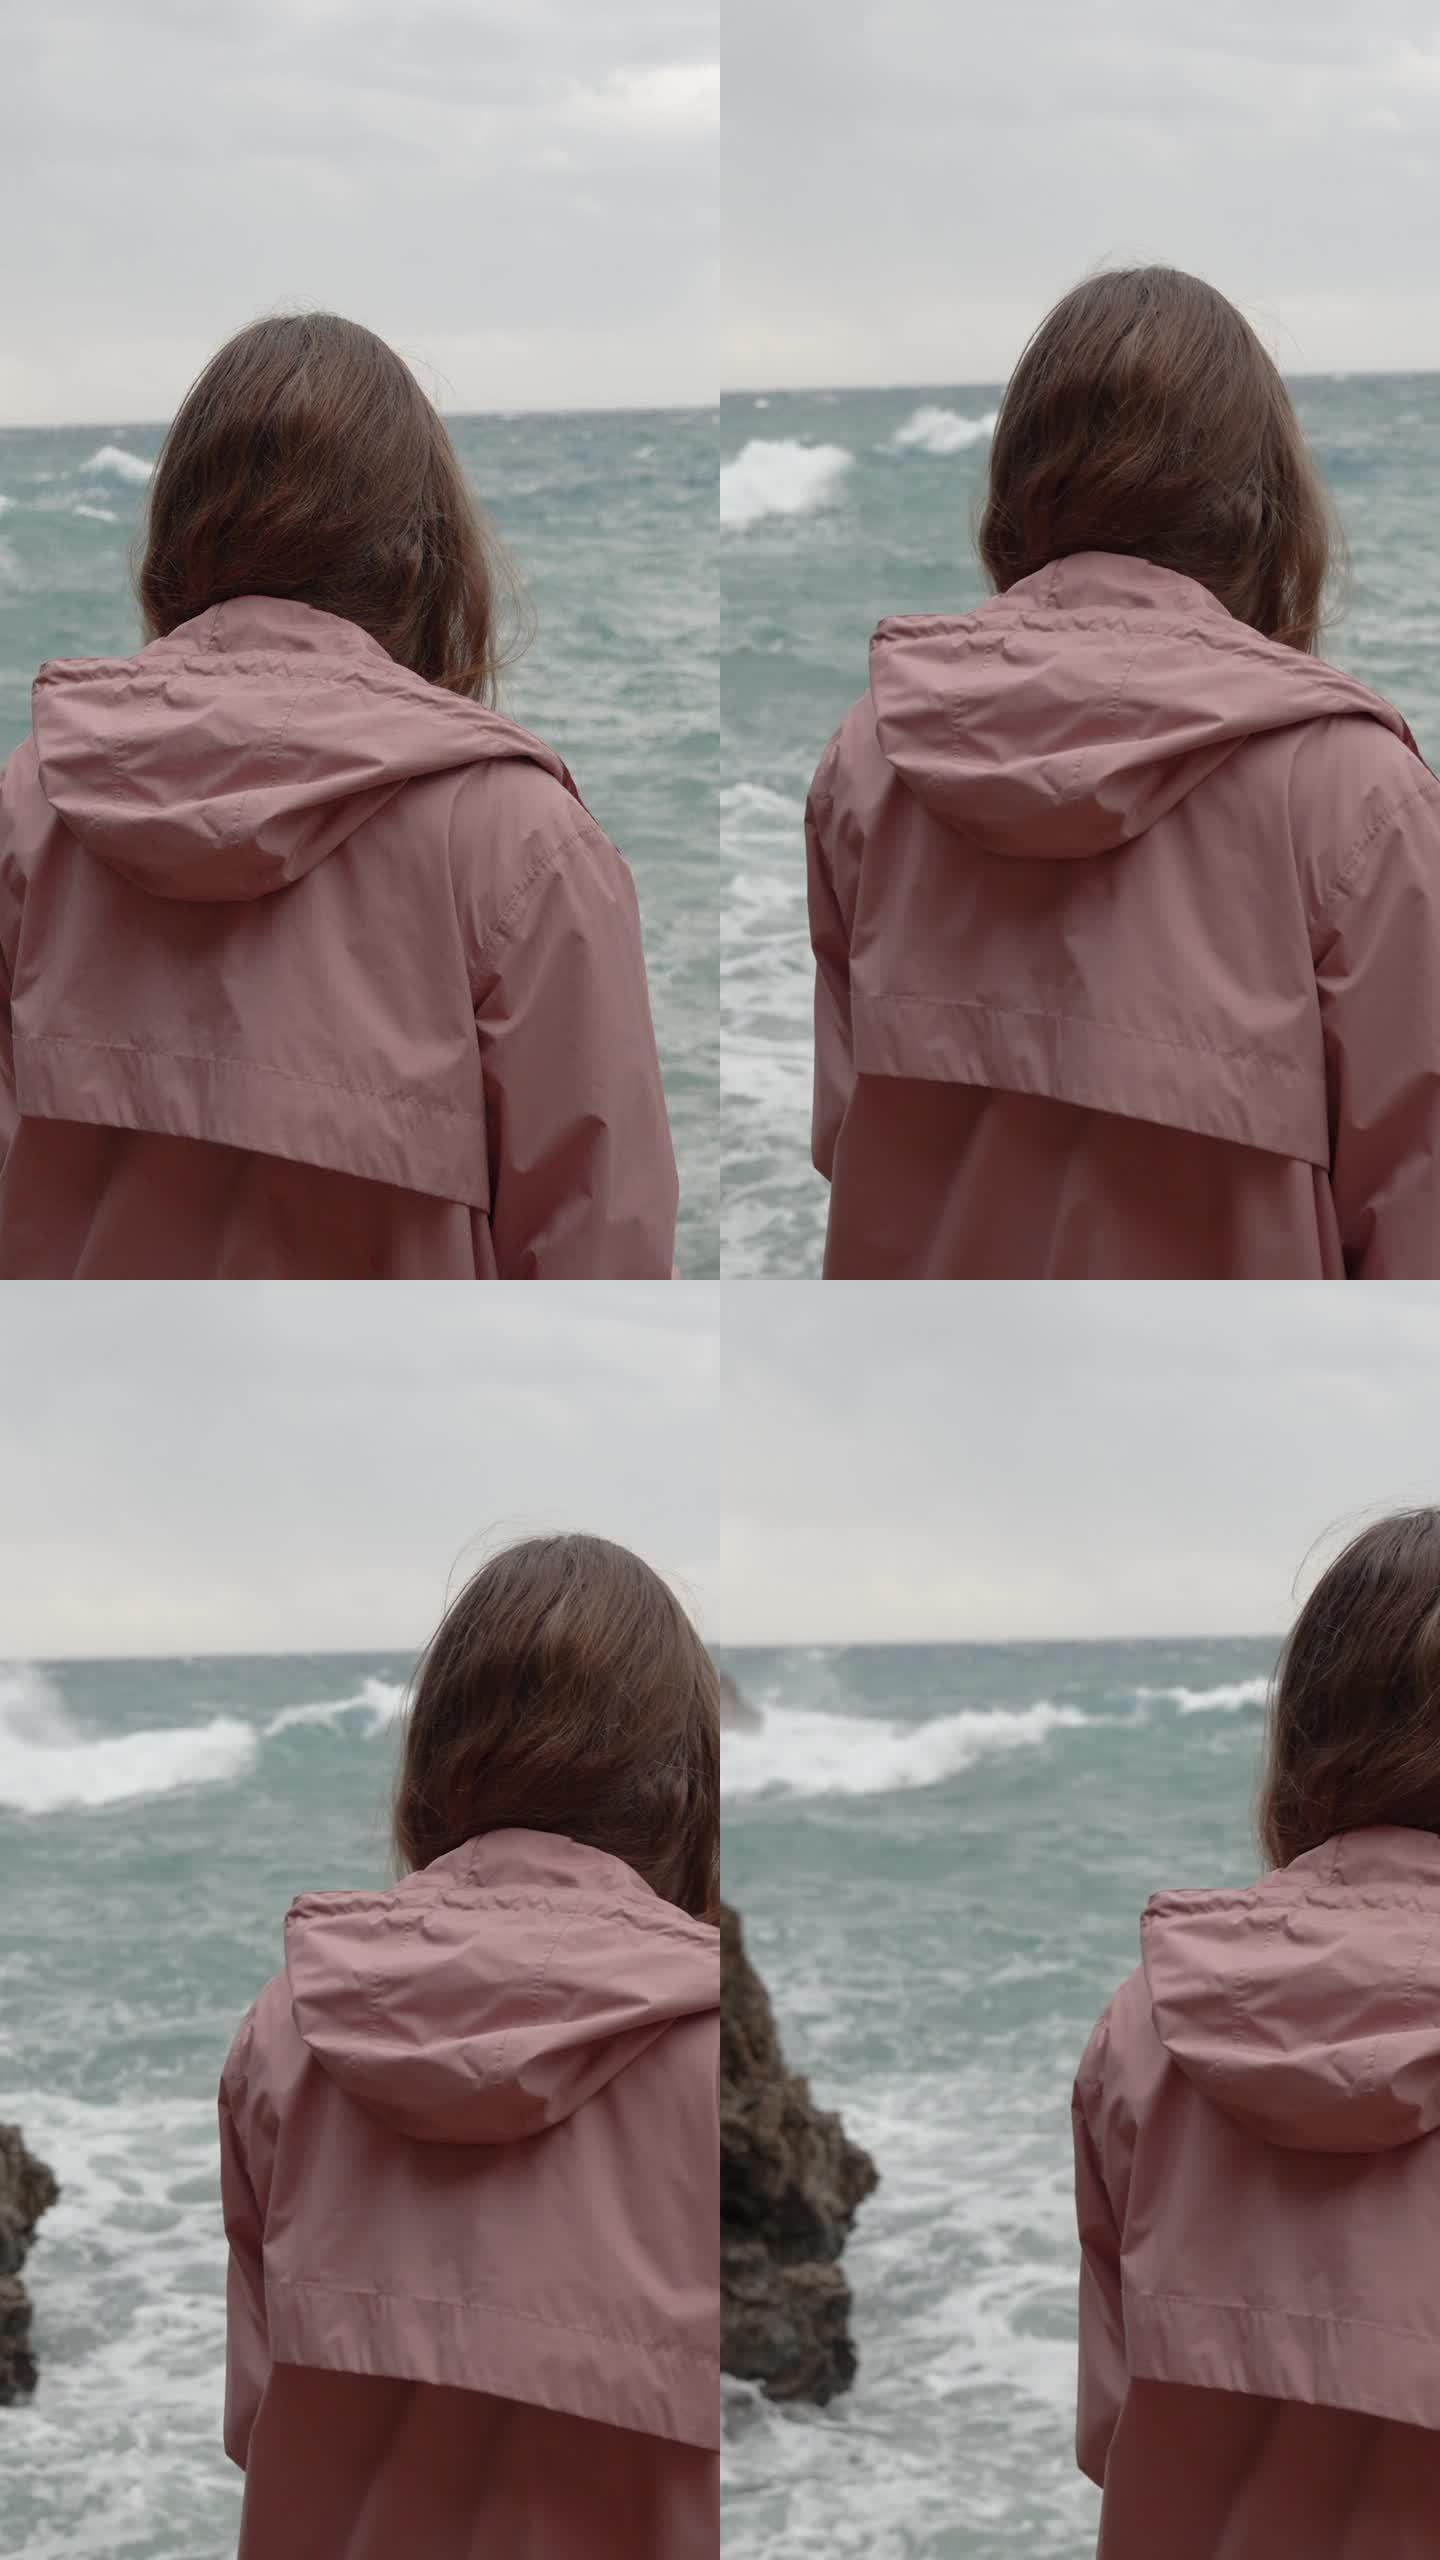 垂直视频。一个孤独的女人凝视着远处汹涌的大海，海浪冲击着尖锐的岩石。缓慢的运动。